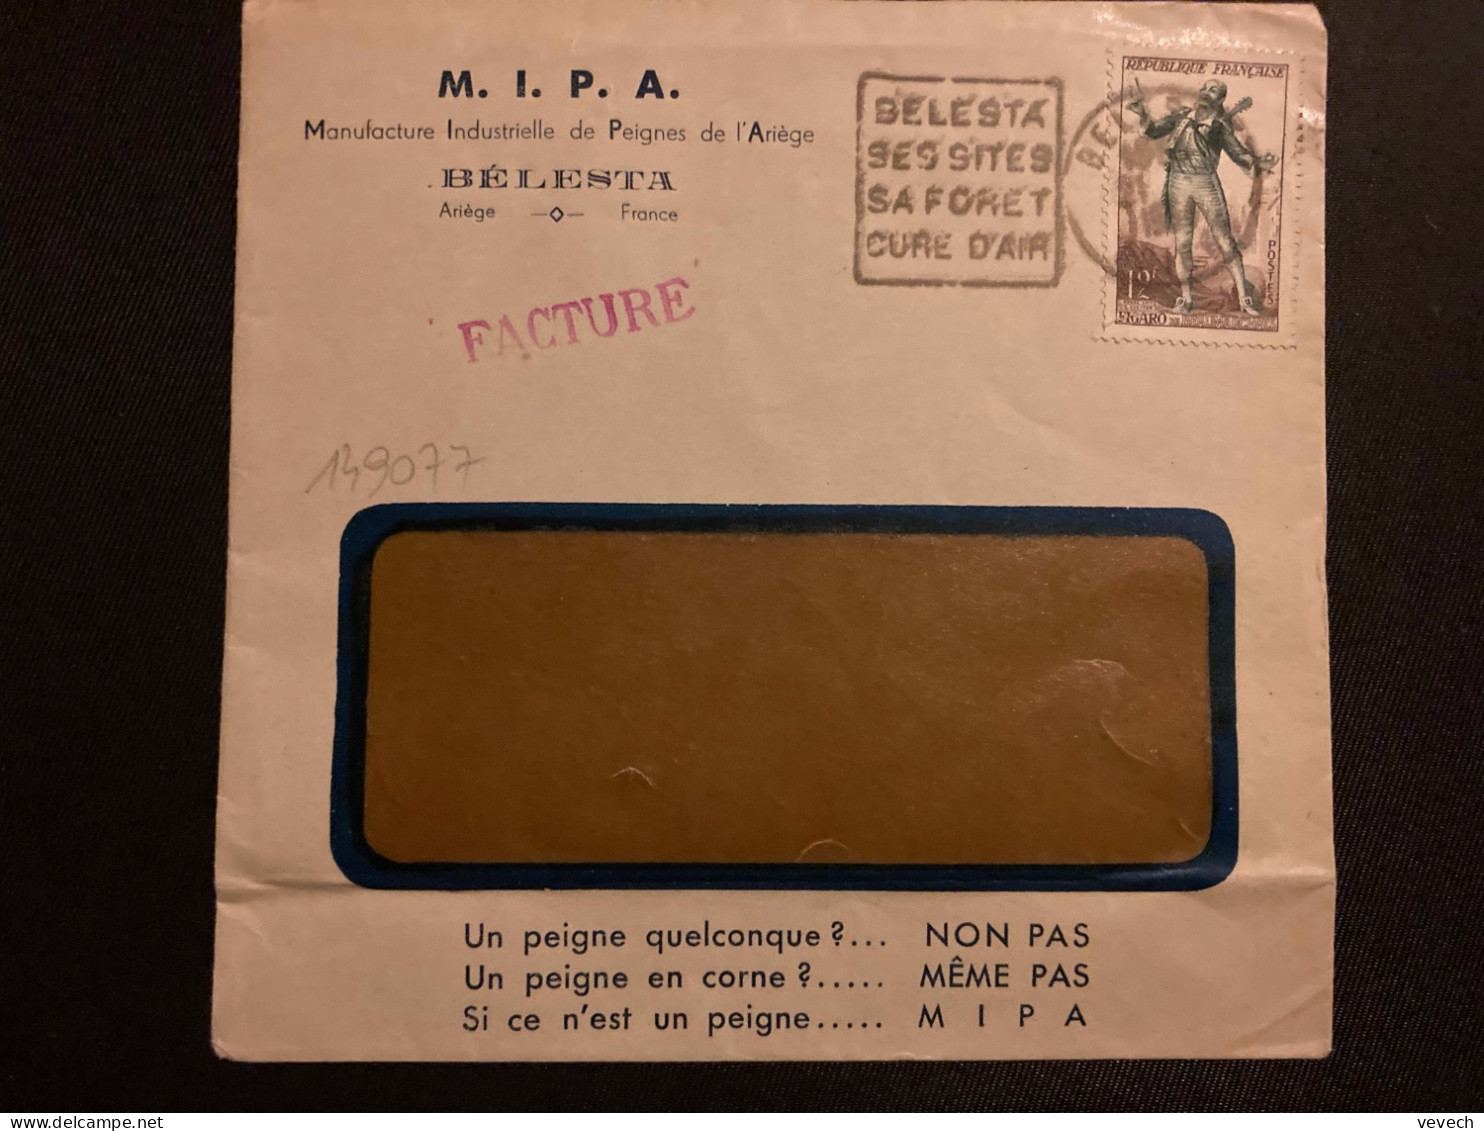 LETTRE MIPA PEIGNES DE L'ARIEGE TP FIGARO 12F OBL. DAGUIN 21-? 1954 BELESTA ARIEGE (09) SES SITES SA FORET CURE D'AIR - Mechanical Postmarks (Other)